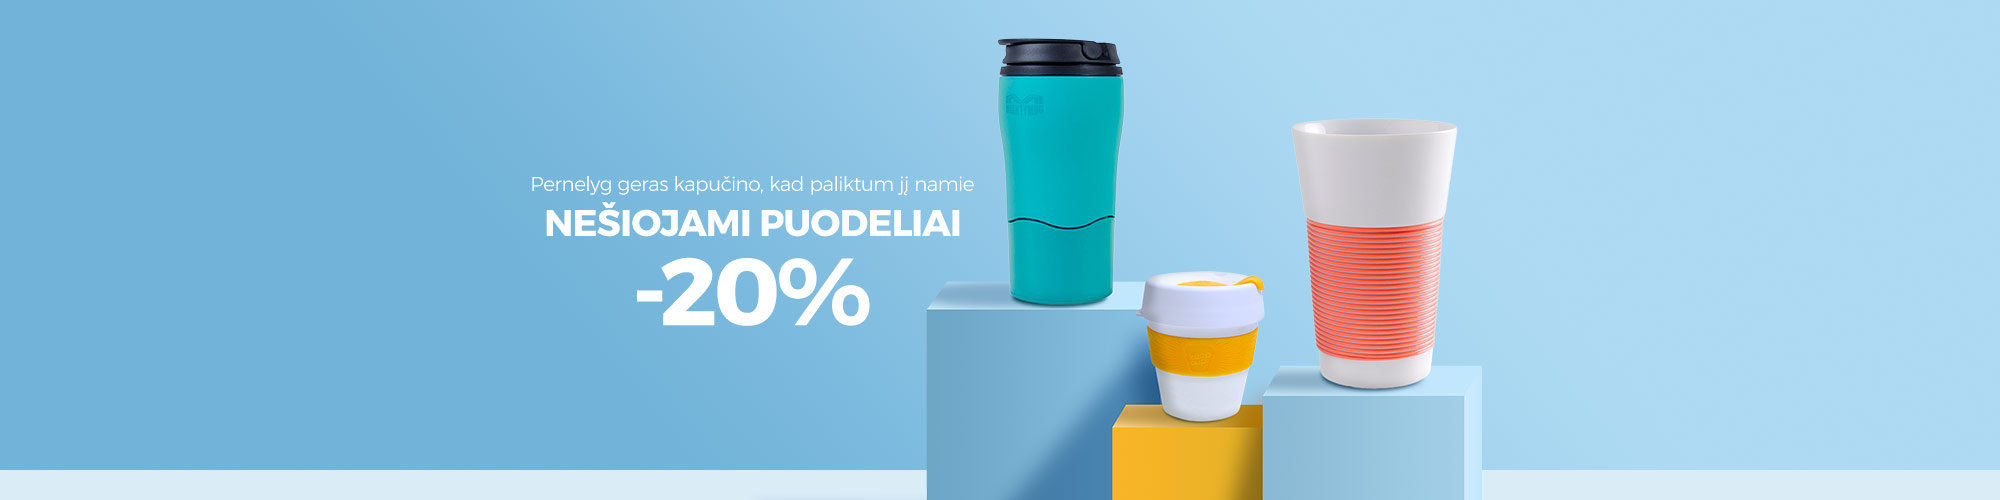 Nešiojami puodeliai -20%